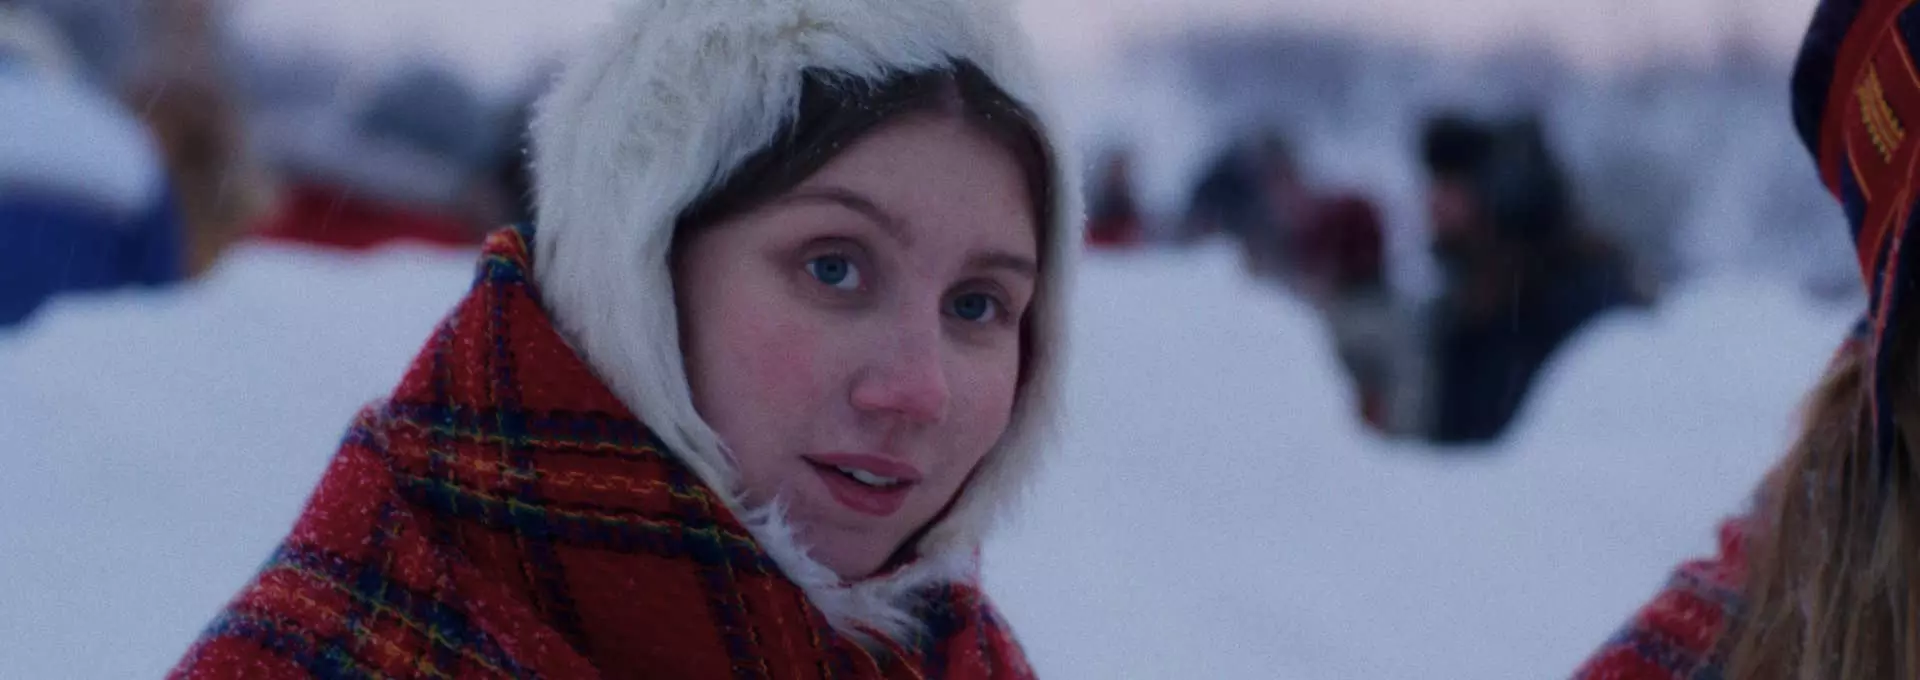 Ung samisk kvinne. Hun har en hvit pelslue og et rødt rutete sjal på seg. Hun er ute. Det er snø rundt henne.